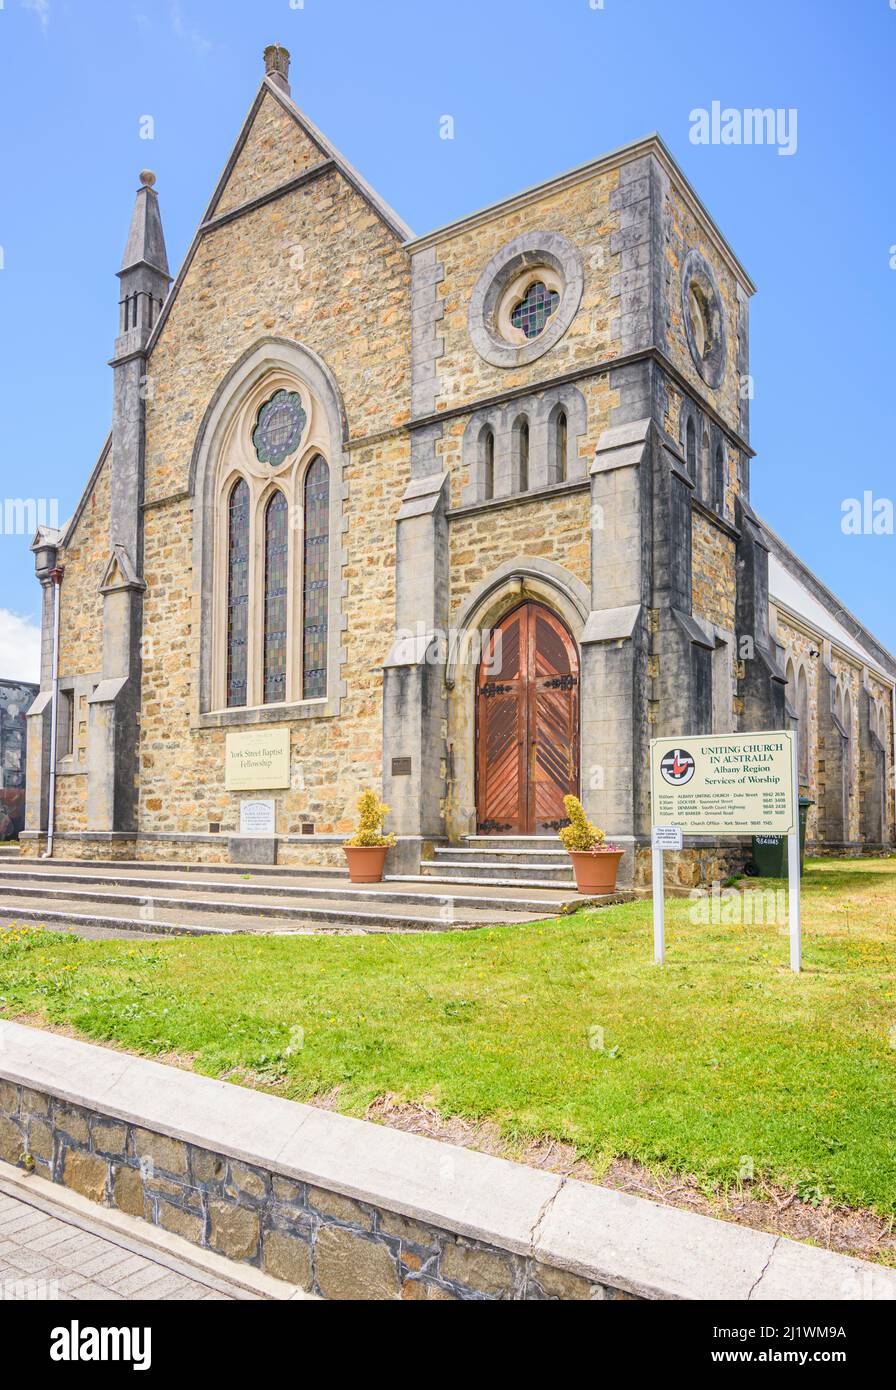 Scots Uniting Church un edificio in stile gotico accademico vittoriano a York St, Albany, Australia Occidentale, Australia Foto Stock